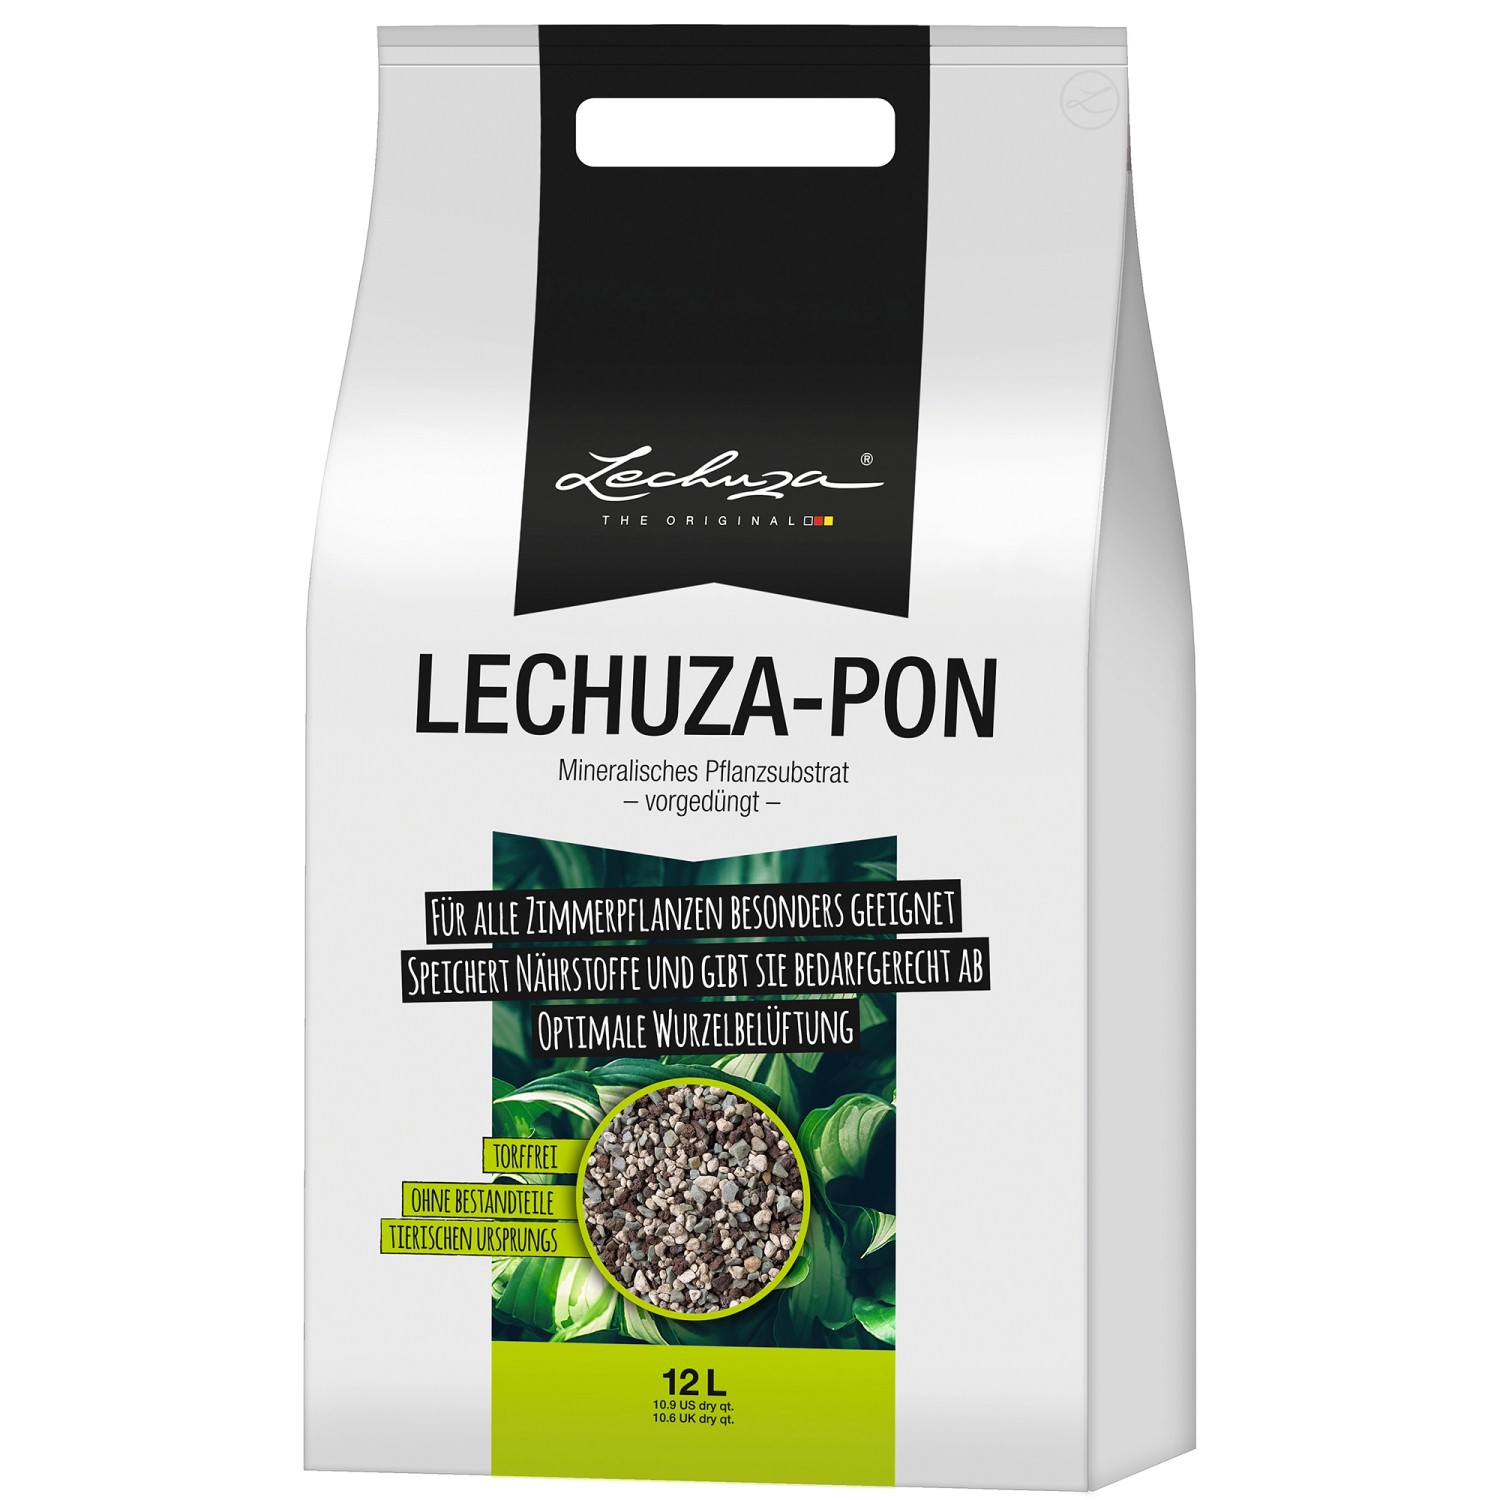 Pflanzsubstrat Lechuza-Pon 12 Liter für Zimmerpflanzen von Lechuza